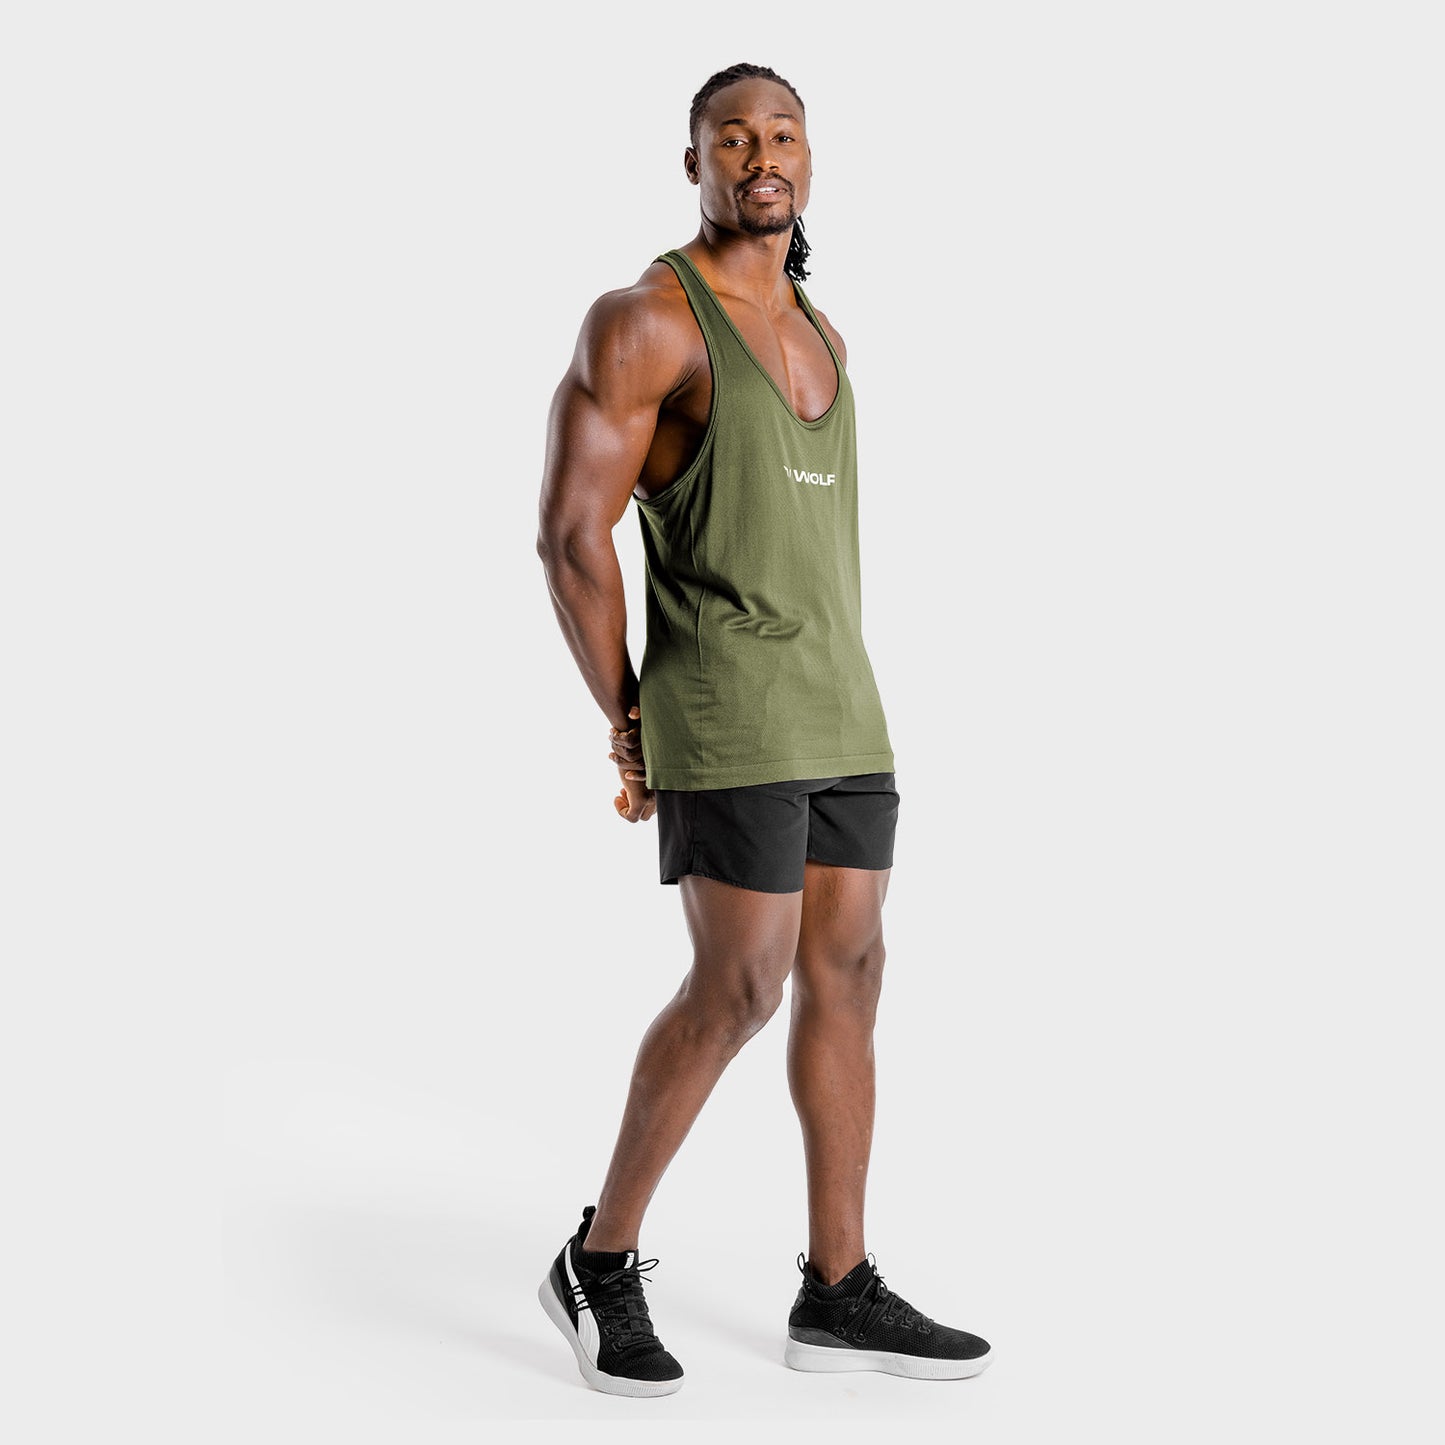 squatwolf-gym-wear-primal-stringer-khaki-stringer-vests-for-men